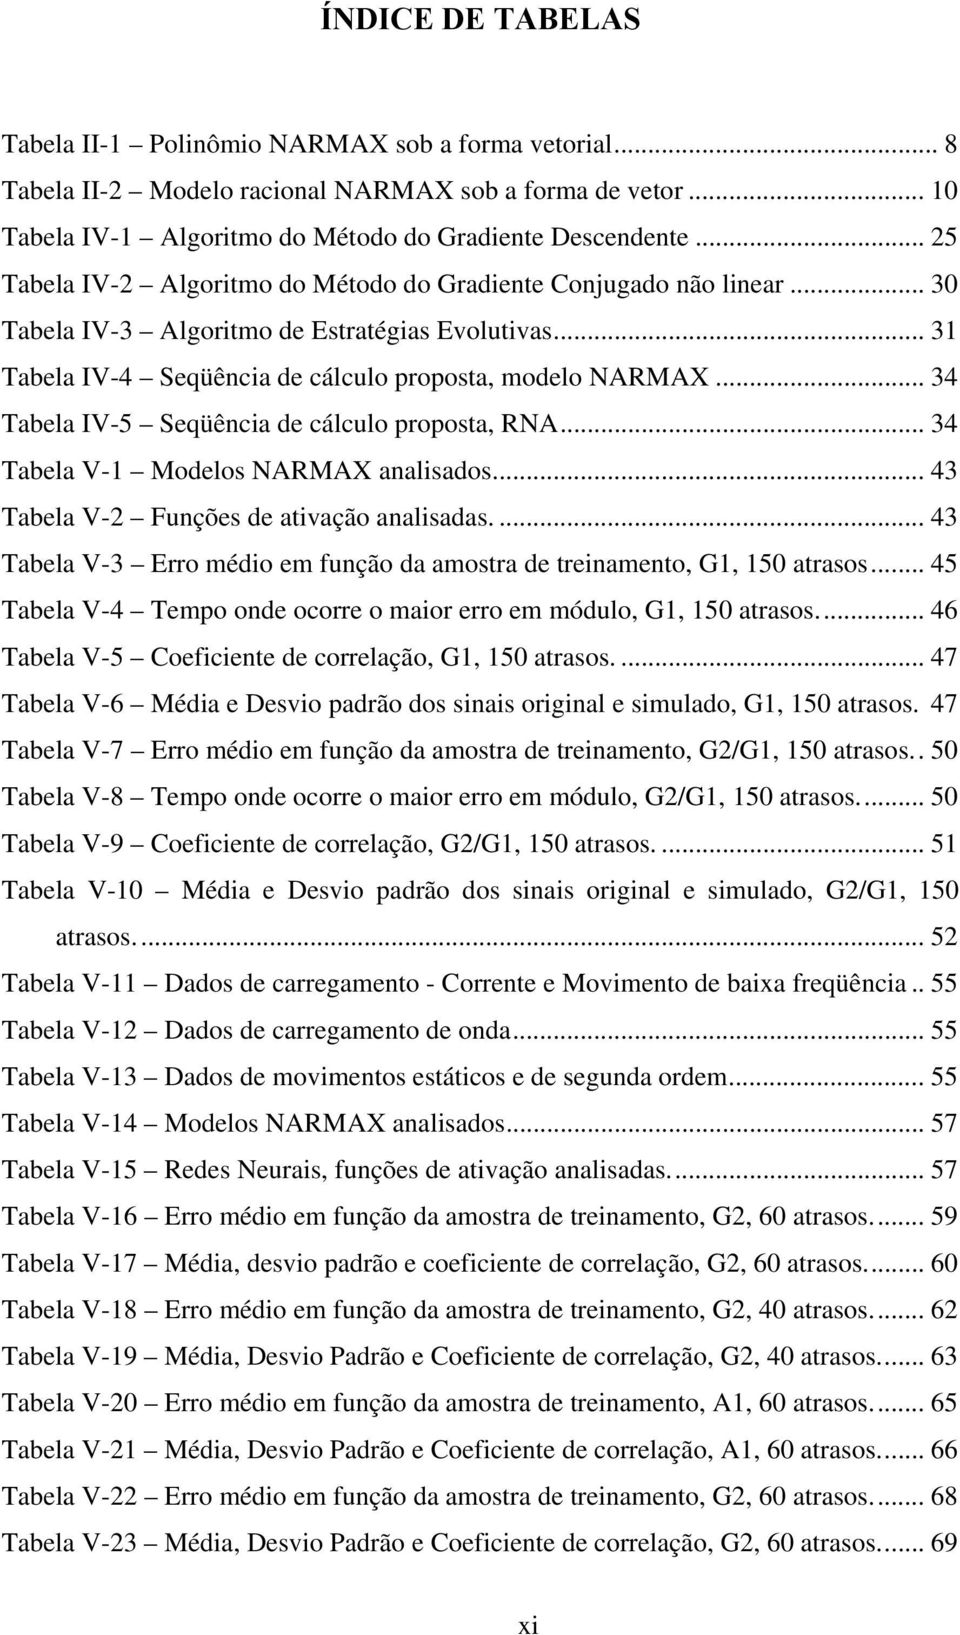 .. 34 Tabela IV-5 Seqüência de cálculo proposta, RNA... 34 Tabela V-1 Modelos NARMAX analisados... 43 Tabela V-2 Funções de ativação analisadas.